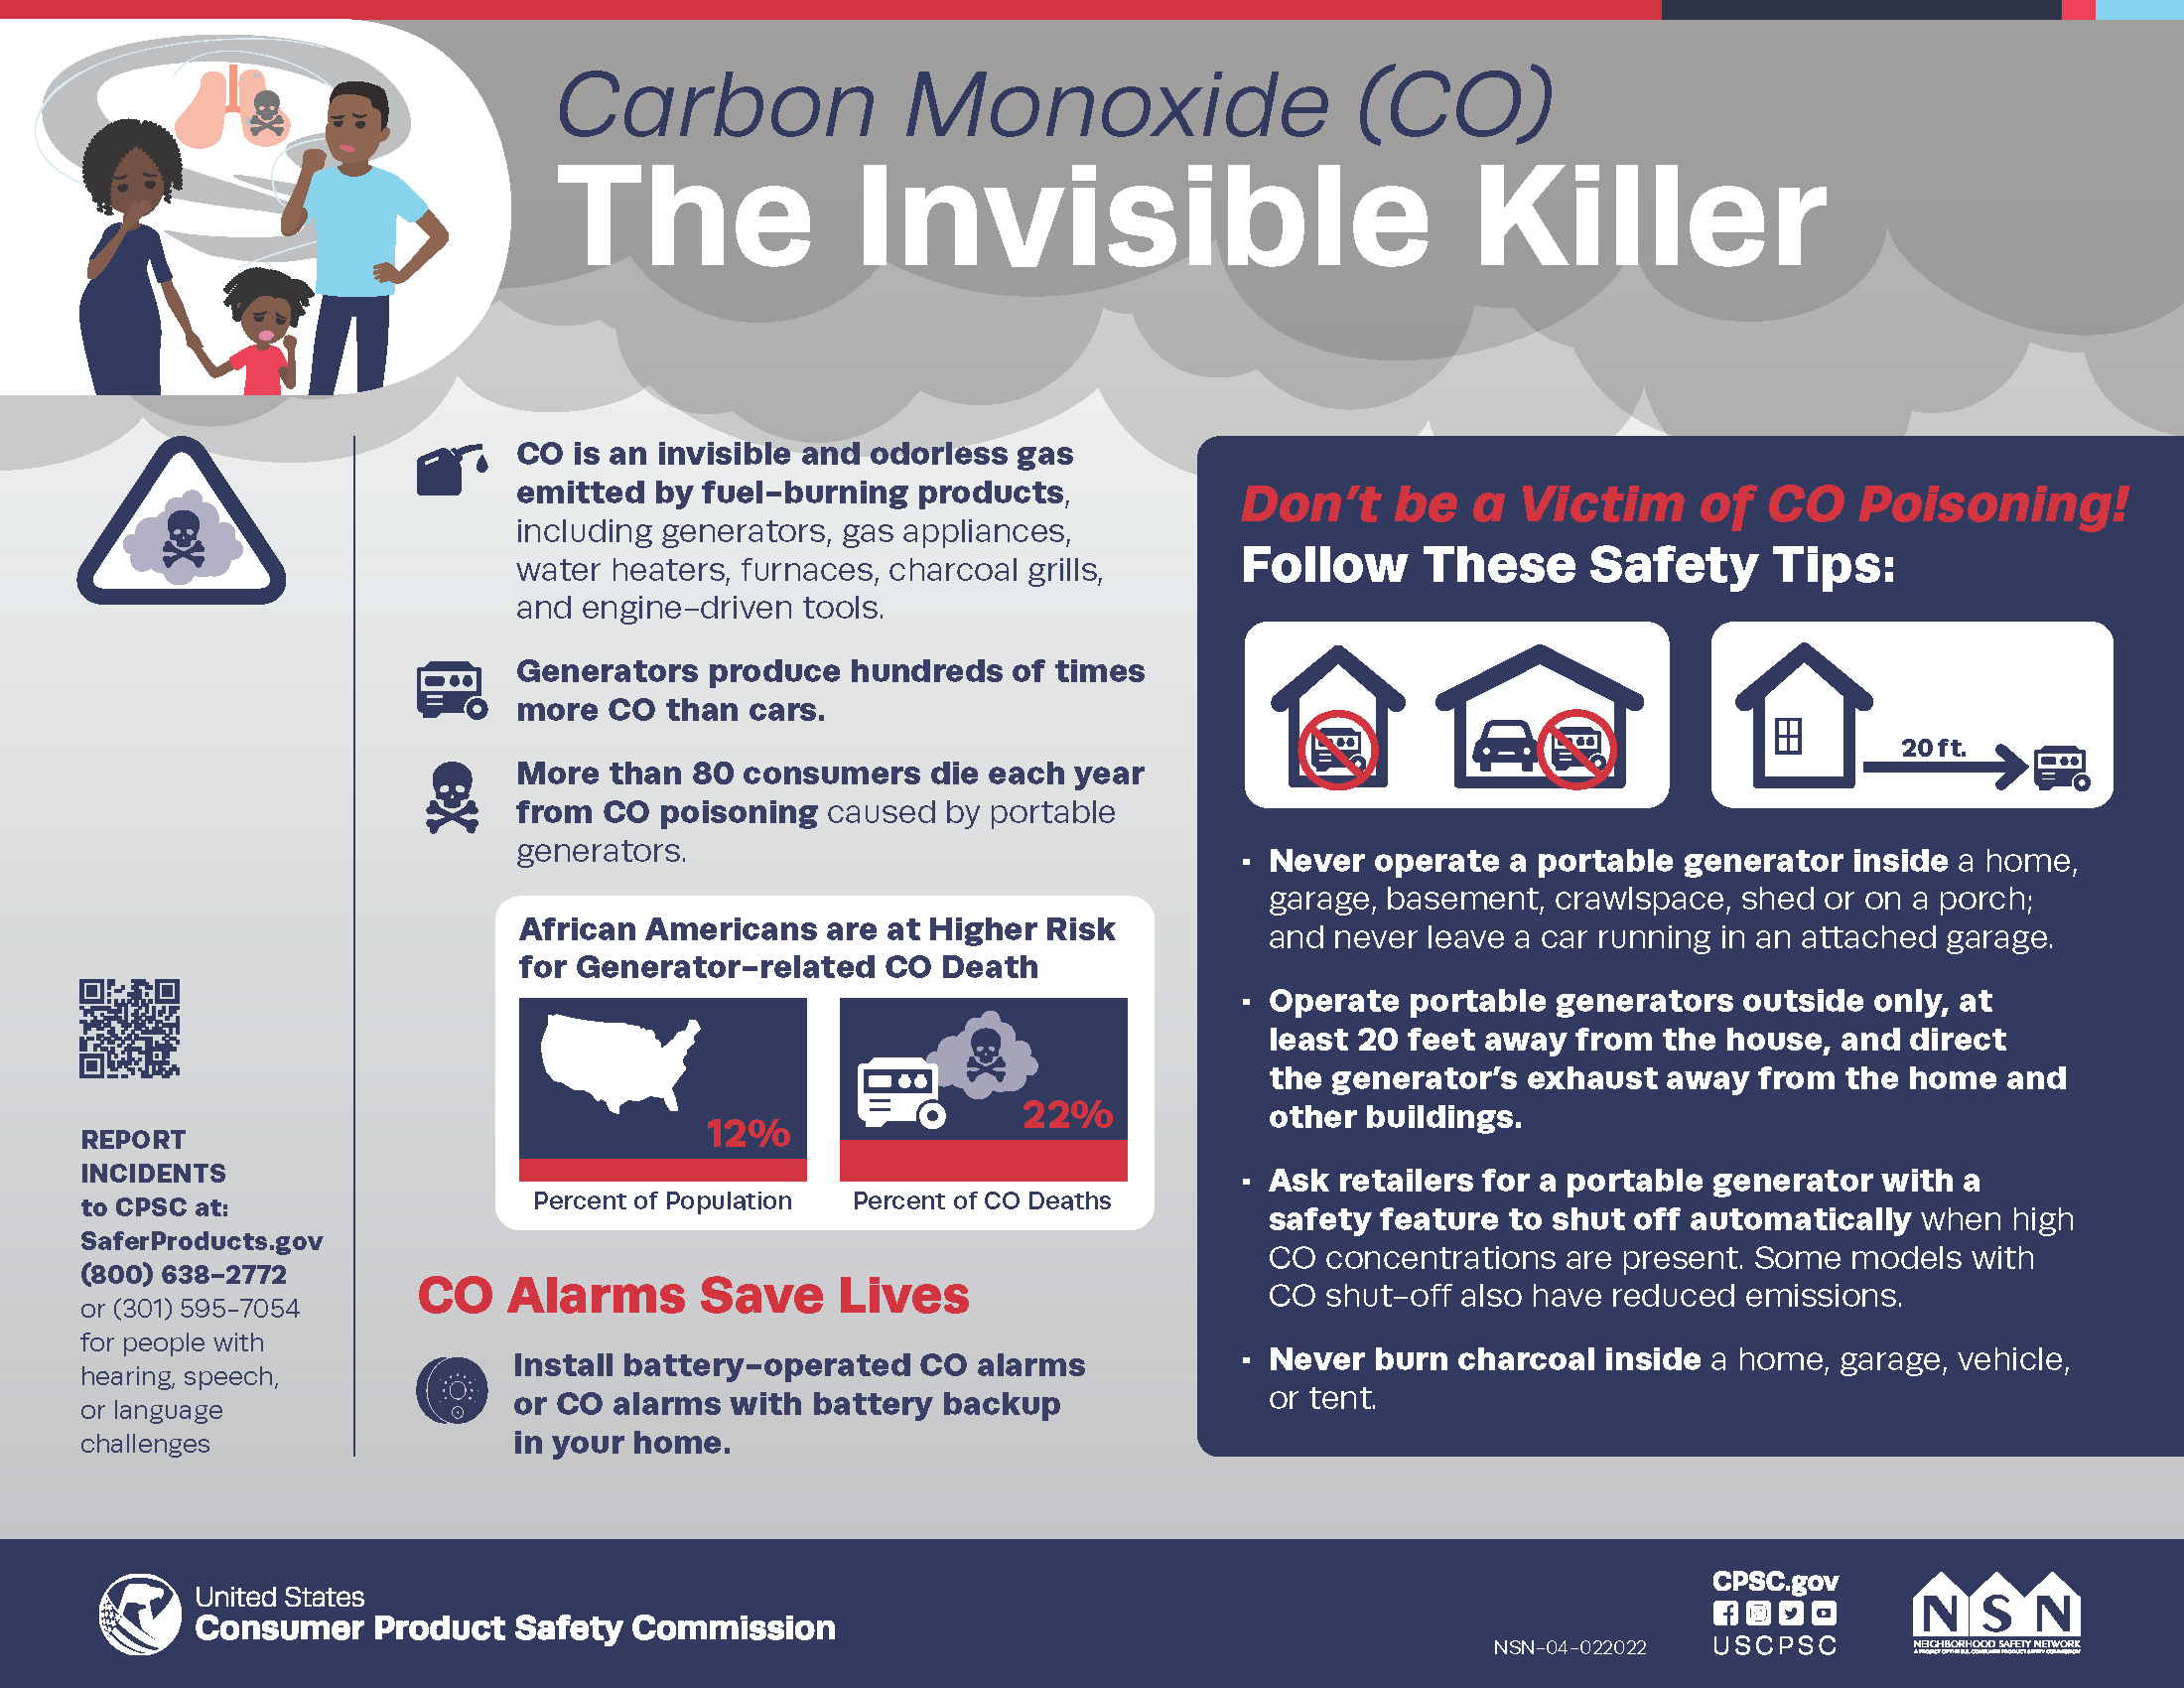 Carbon Monoxide - The Invisible Killer